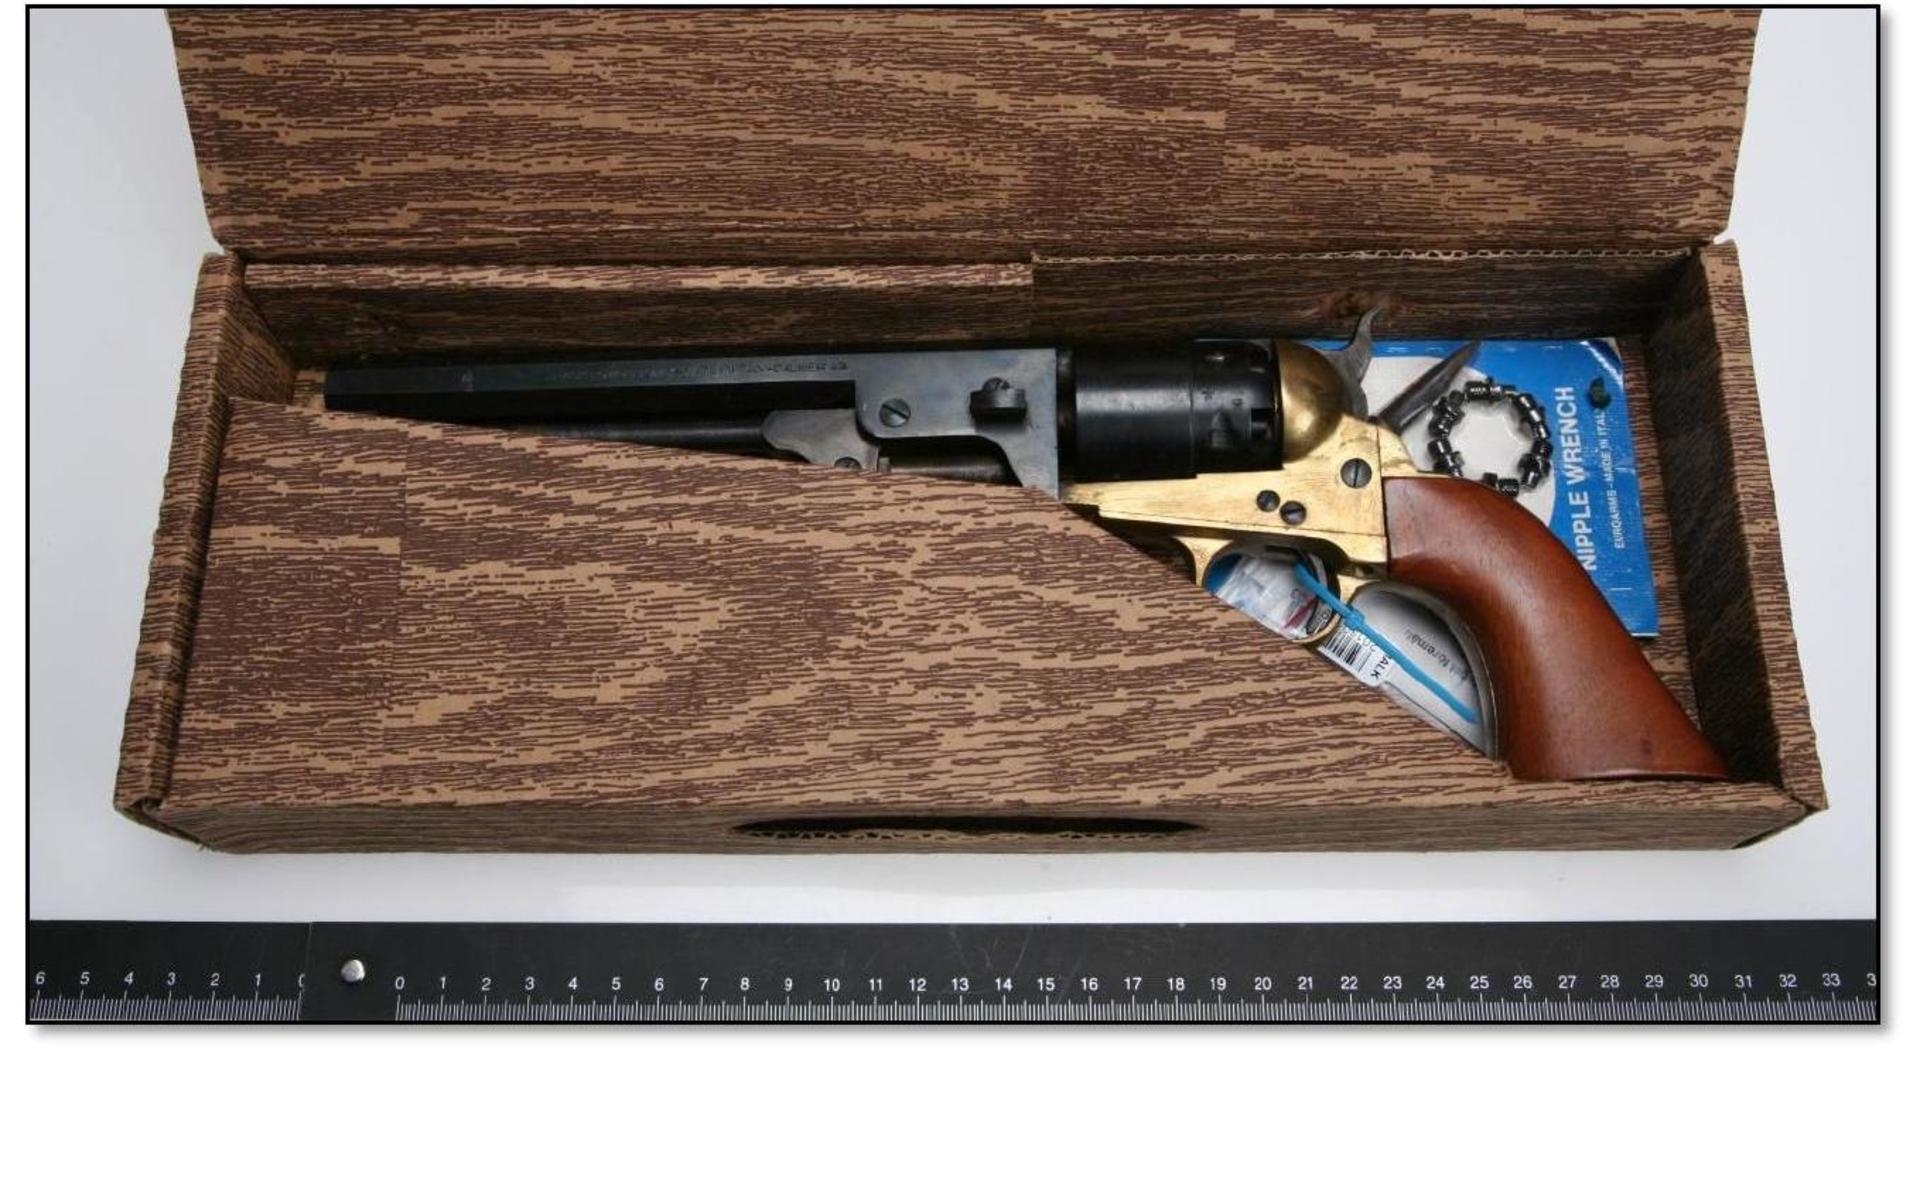 En revolver av singel aktion-typ i kaliber .44. Licens saknades. Lådan innehöll revolver, extra nipplar och ett monteringsverktyg. Bild: Polisen